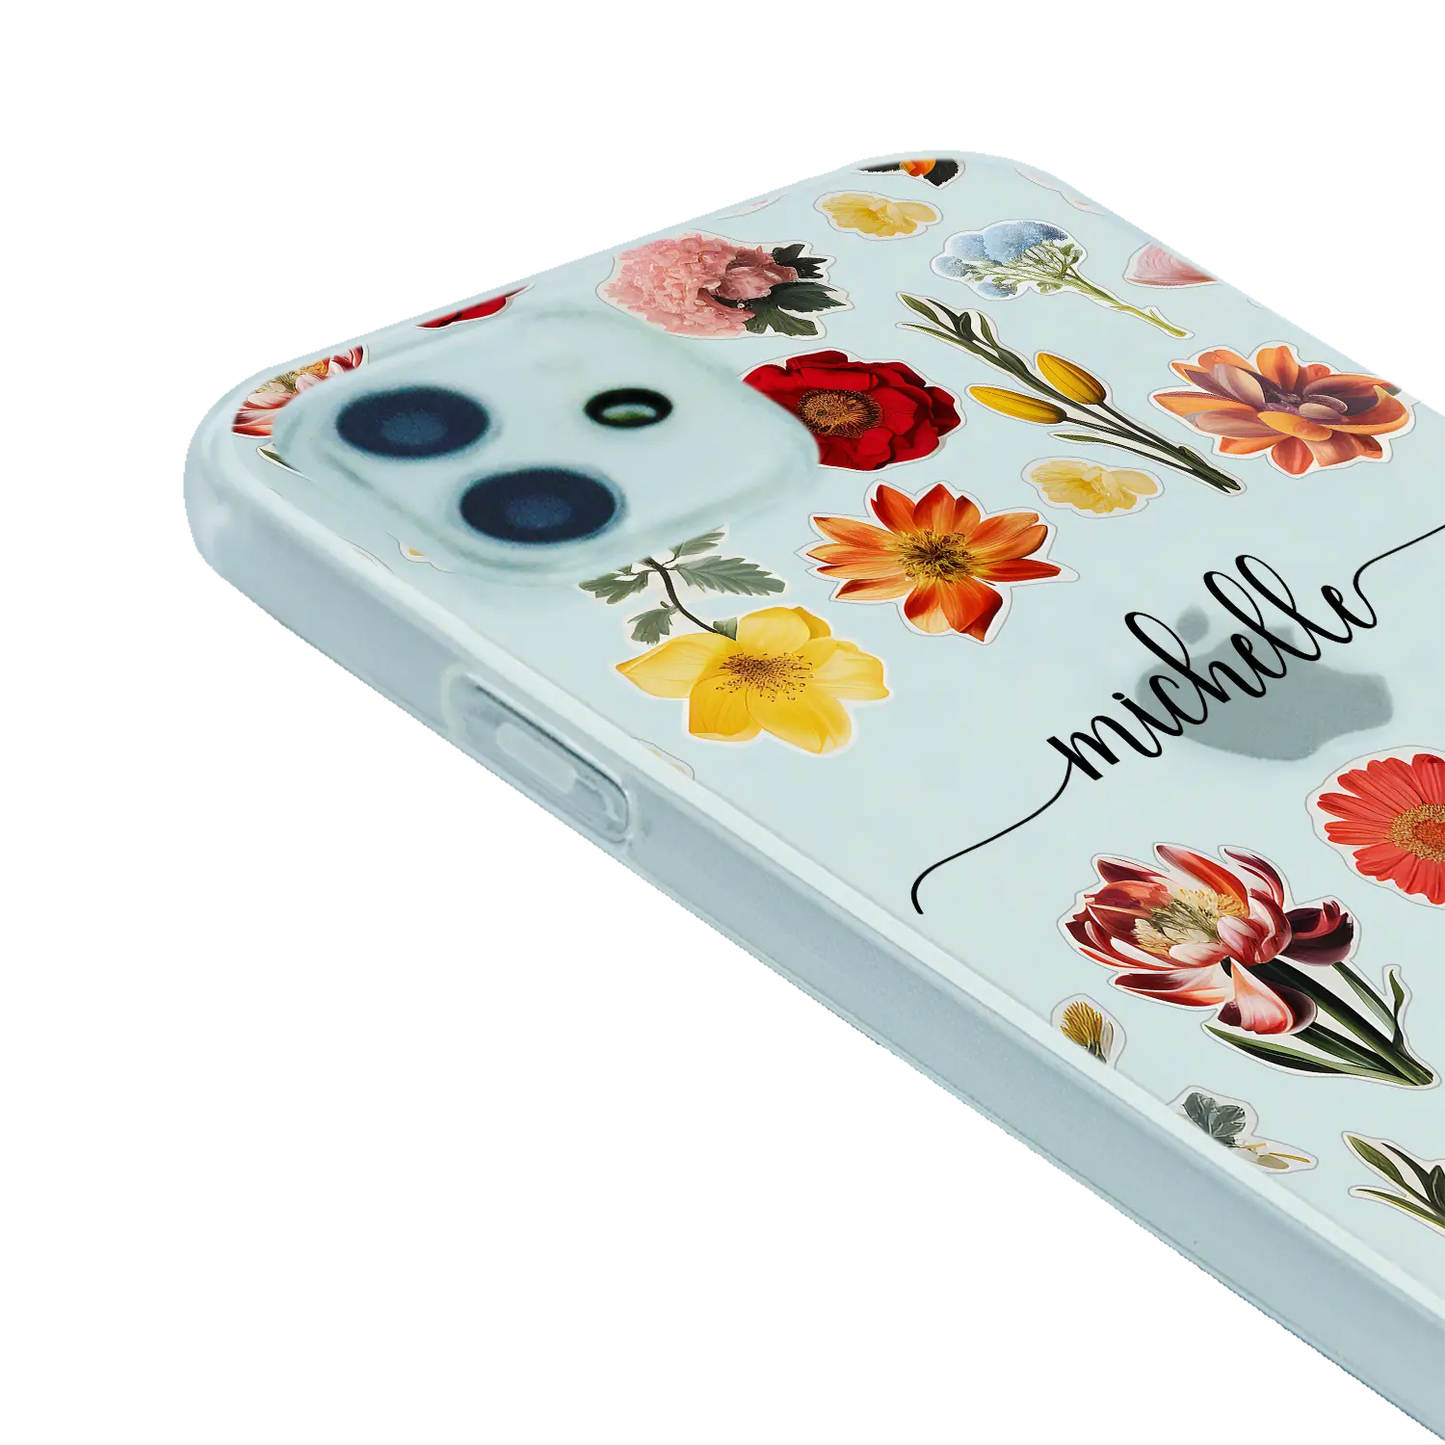 Flower Stickers - Custom Galaxy A Case